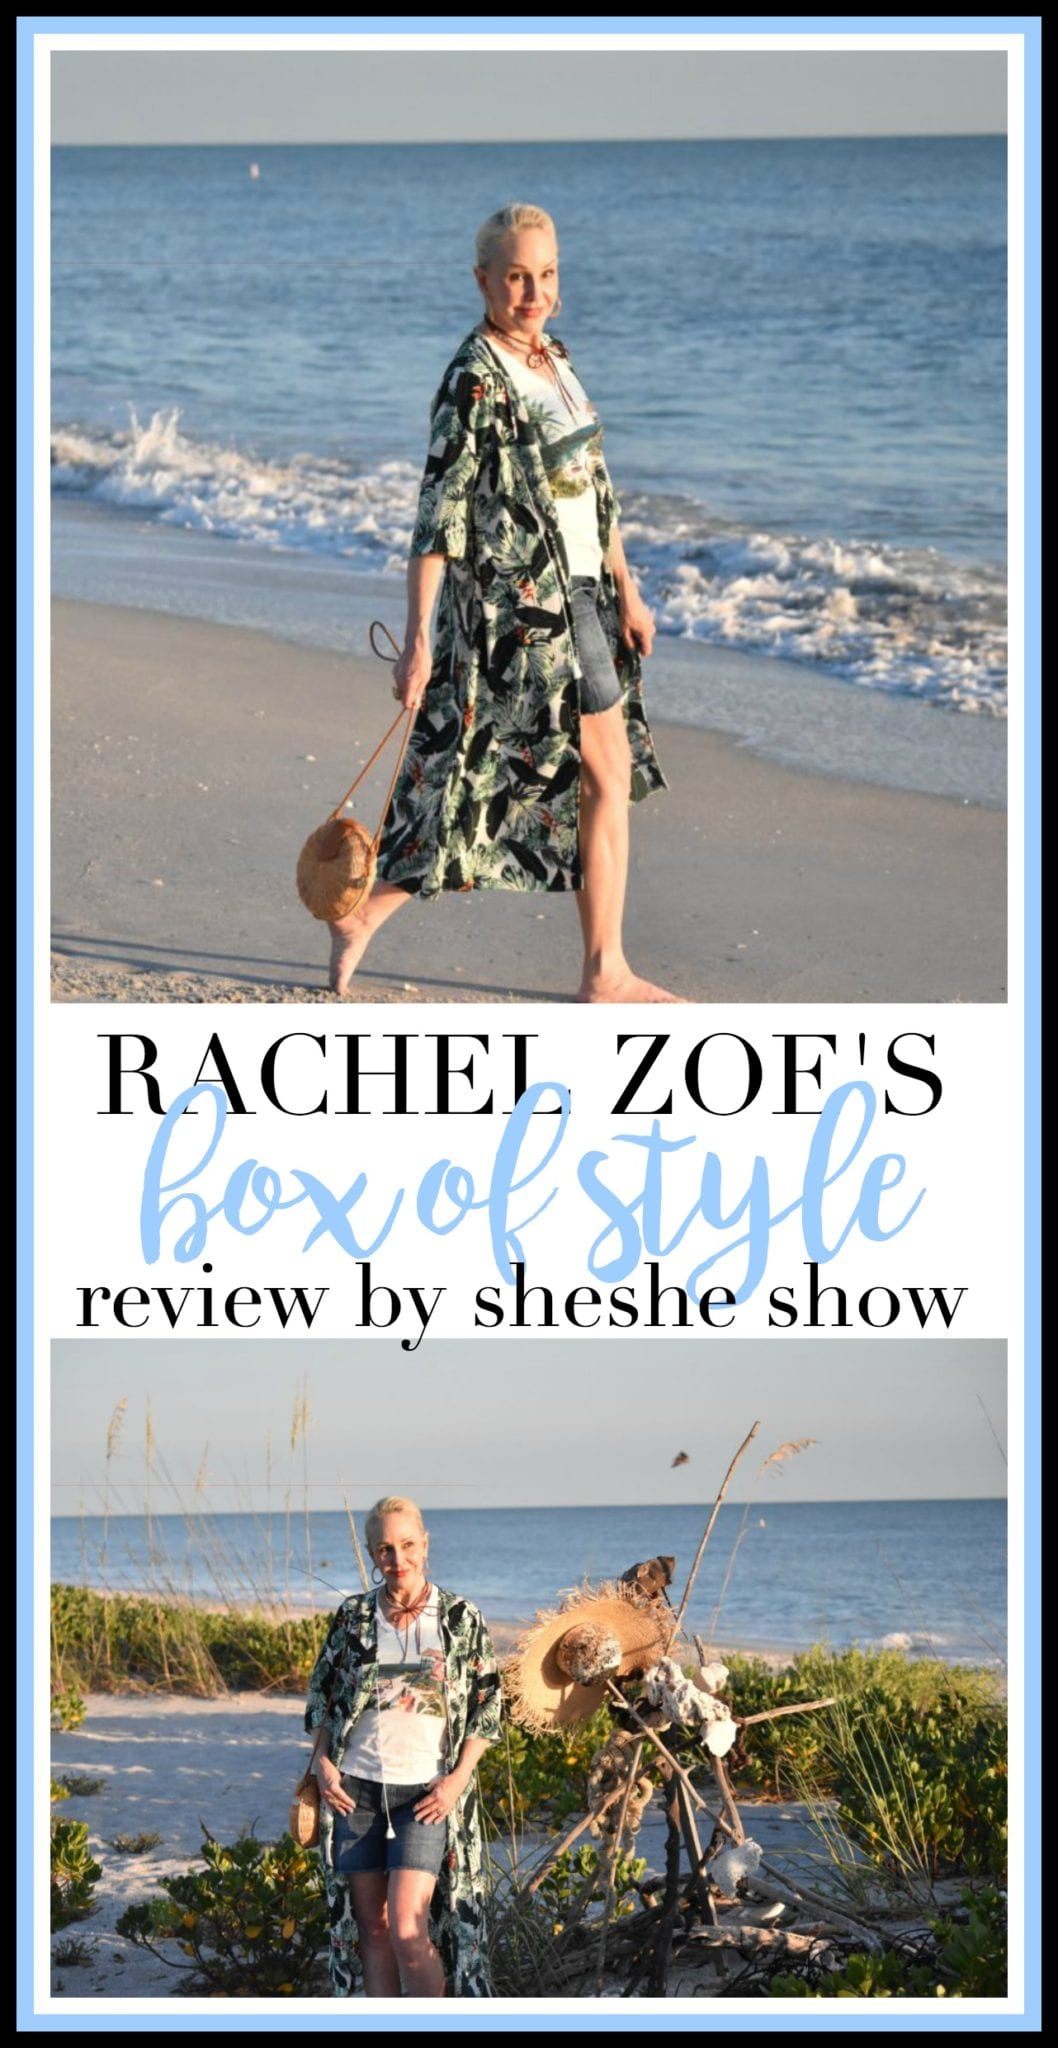 rachel zoe, box of style